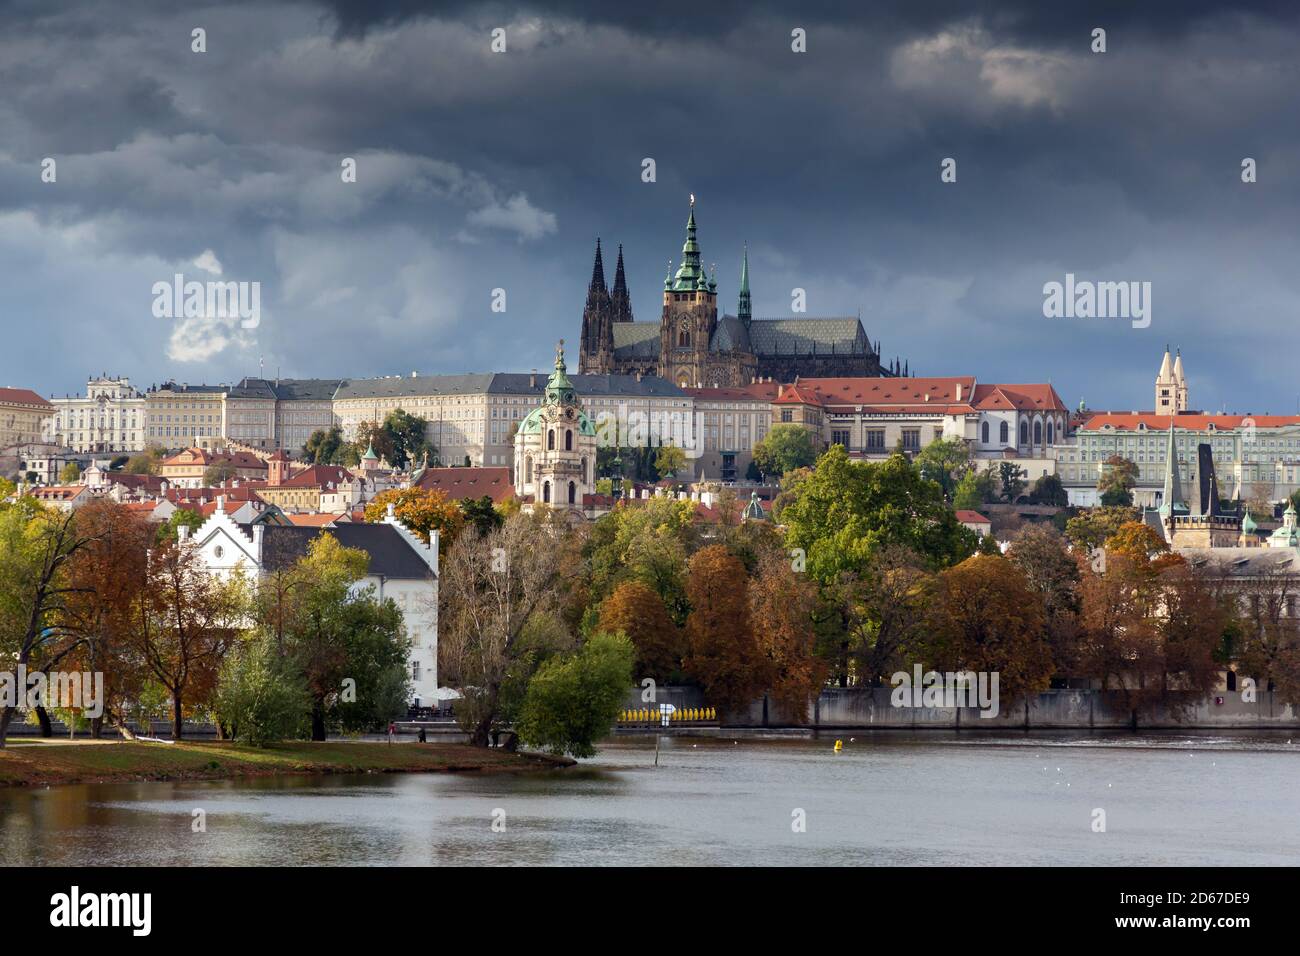 Castillo de Praga visto desde el río Vltava, en la República Checa. La Catedral de San Vito es visible en el centro superior Foto de stock